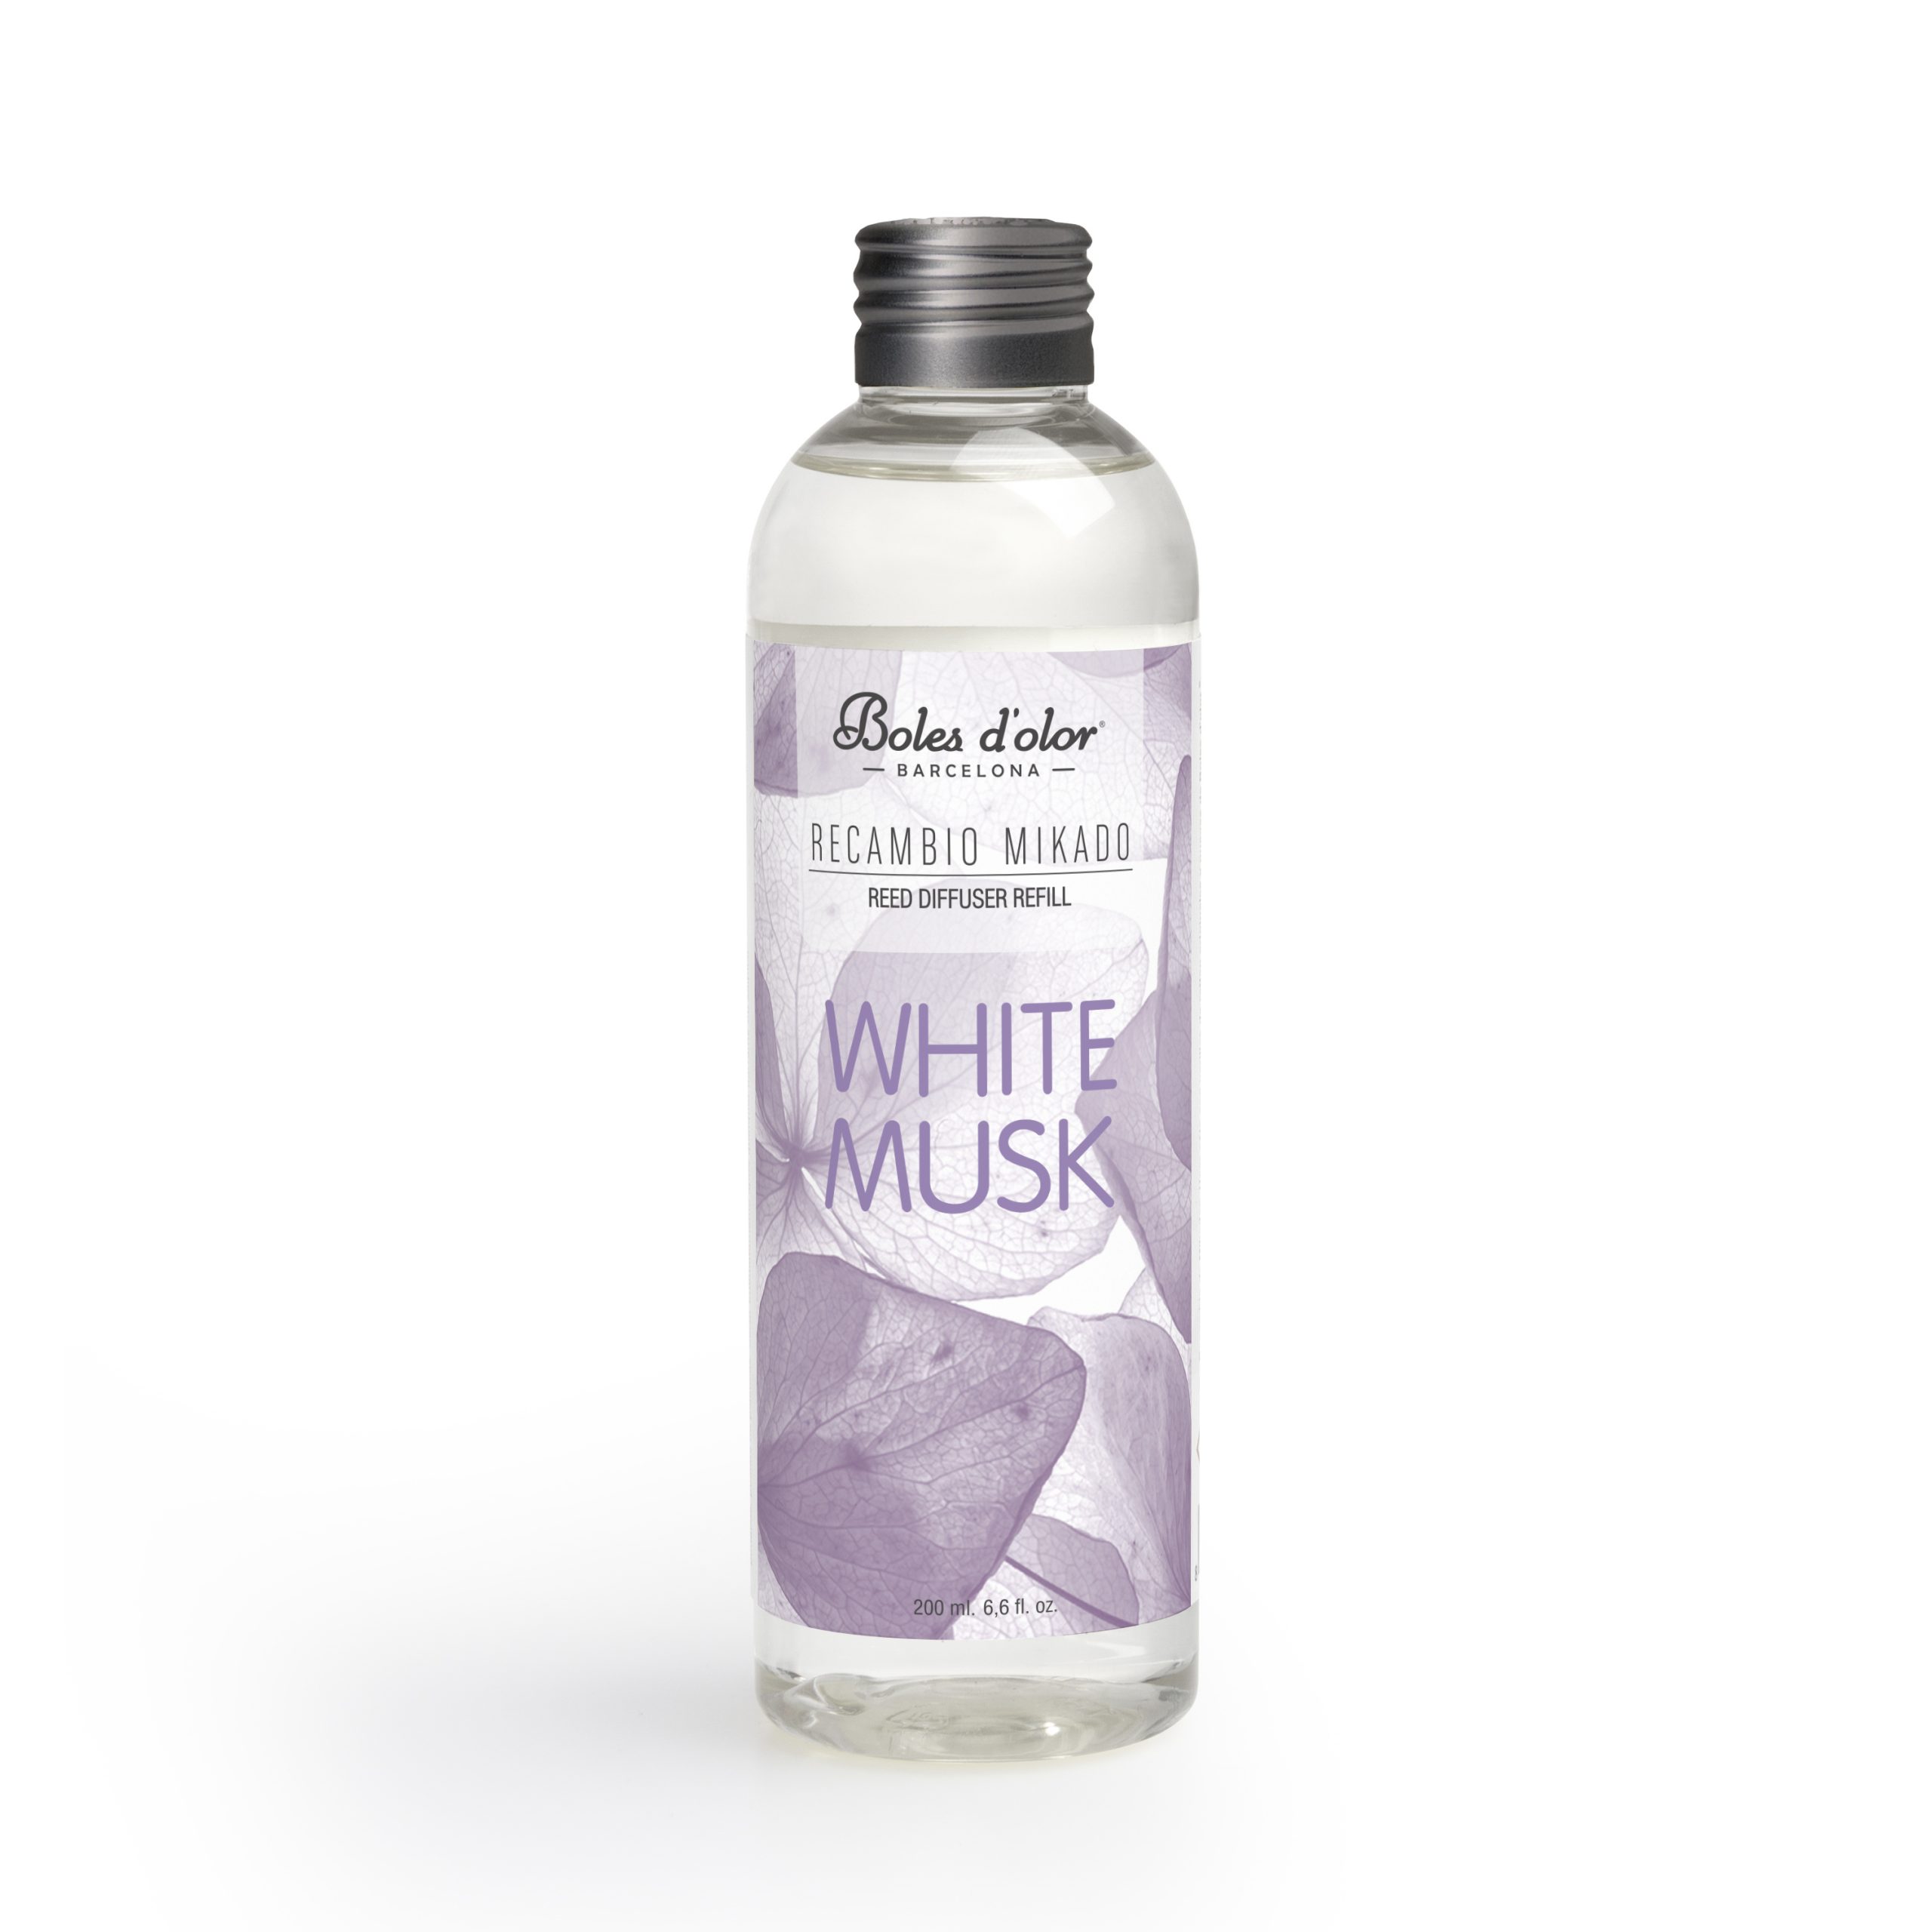 WHITE MUSK - Recambio Mikado 200ml - Boles d'olor